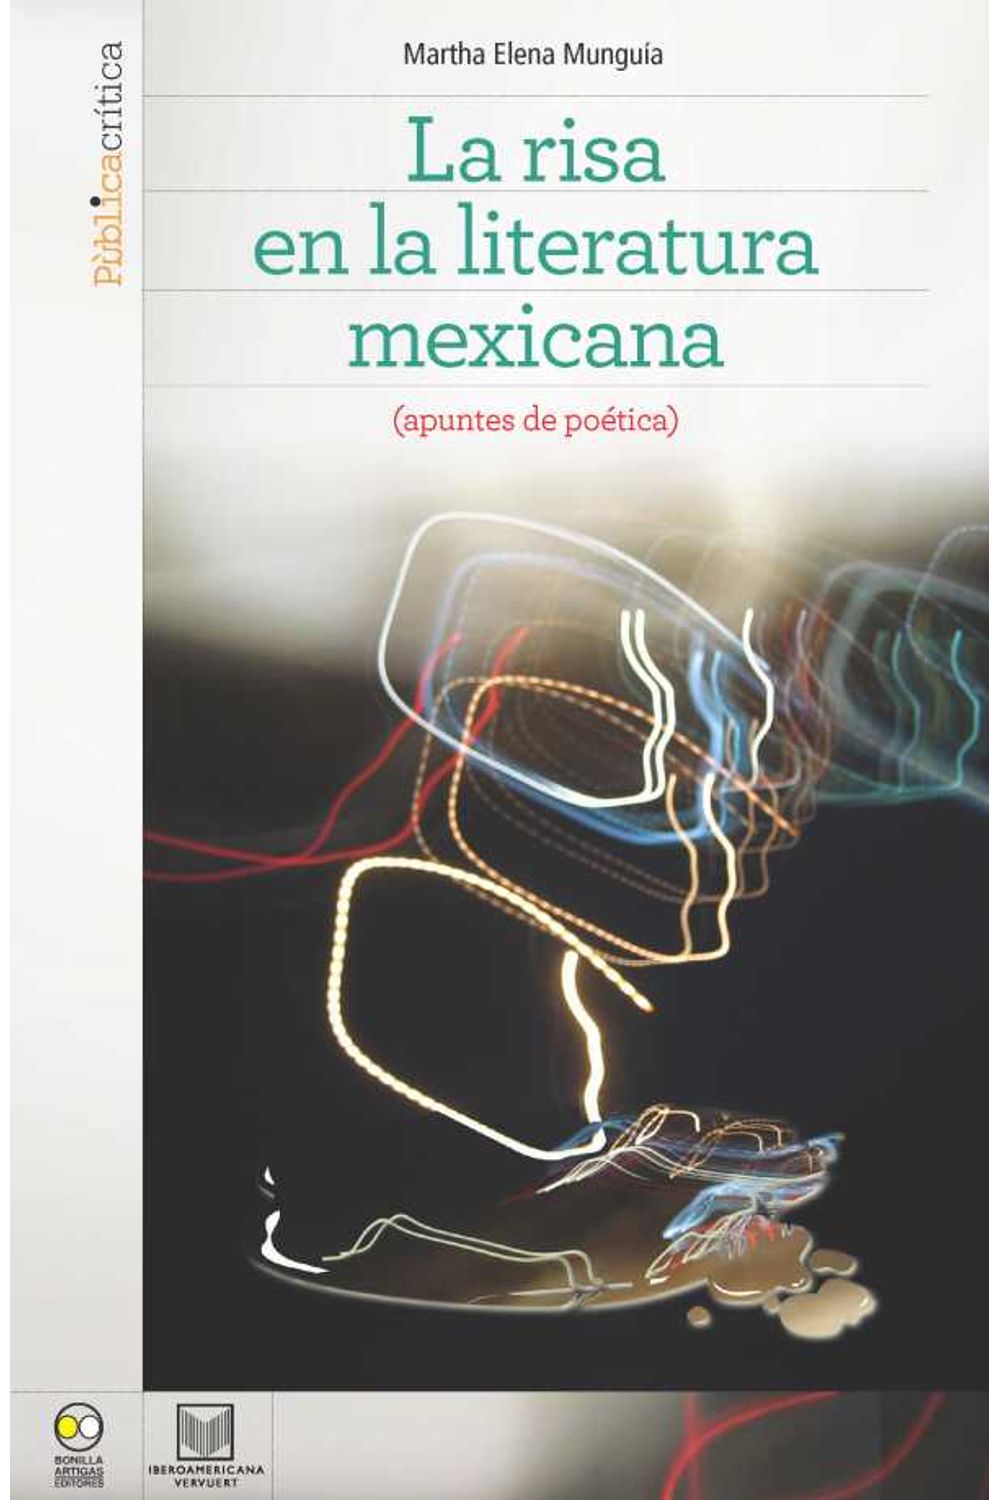 bw-la-risa-en-la-literatura-mexicana-iberoamericana-editorial-vervuert-9783954871148